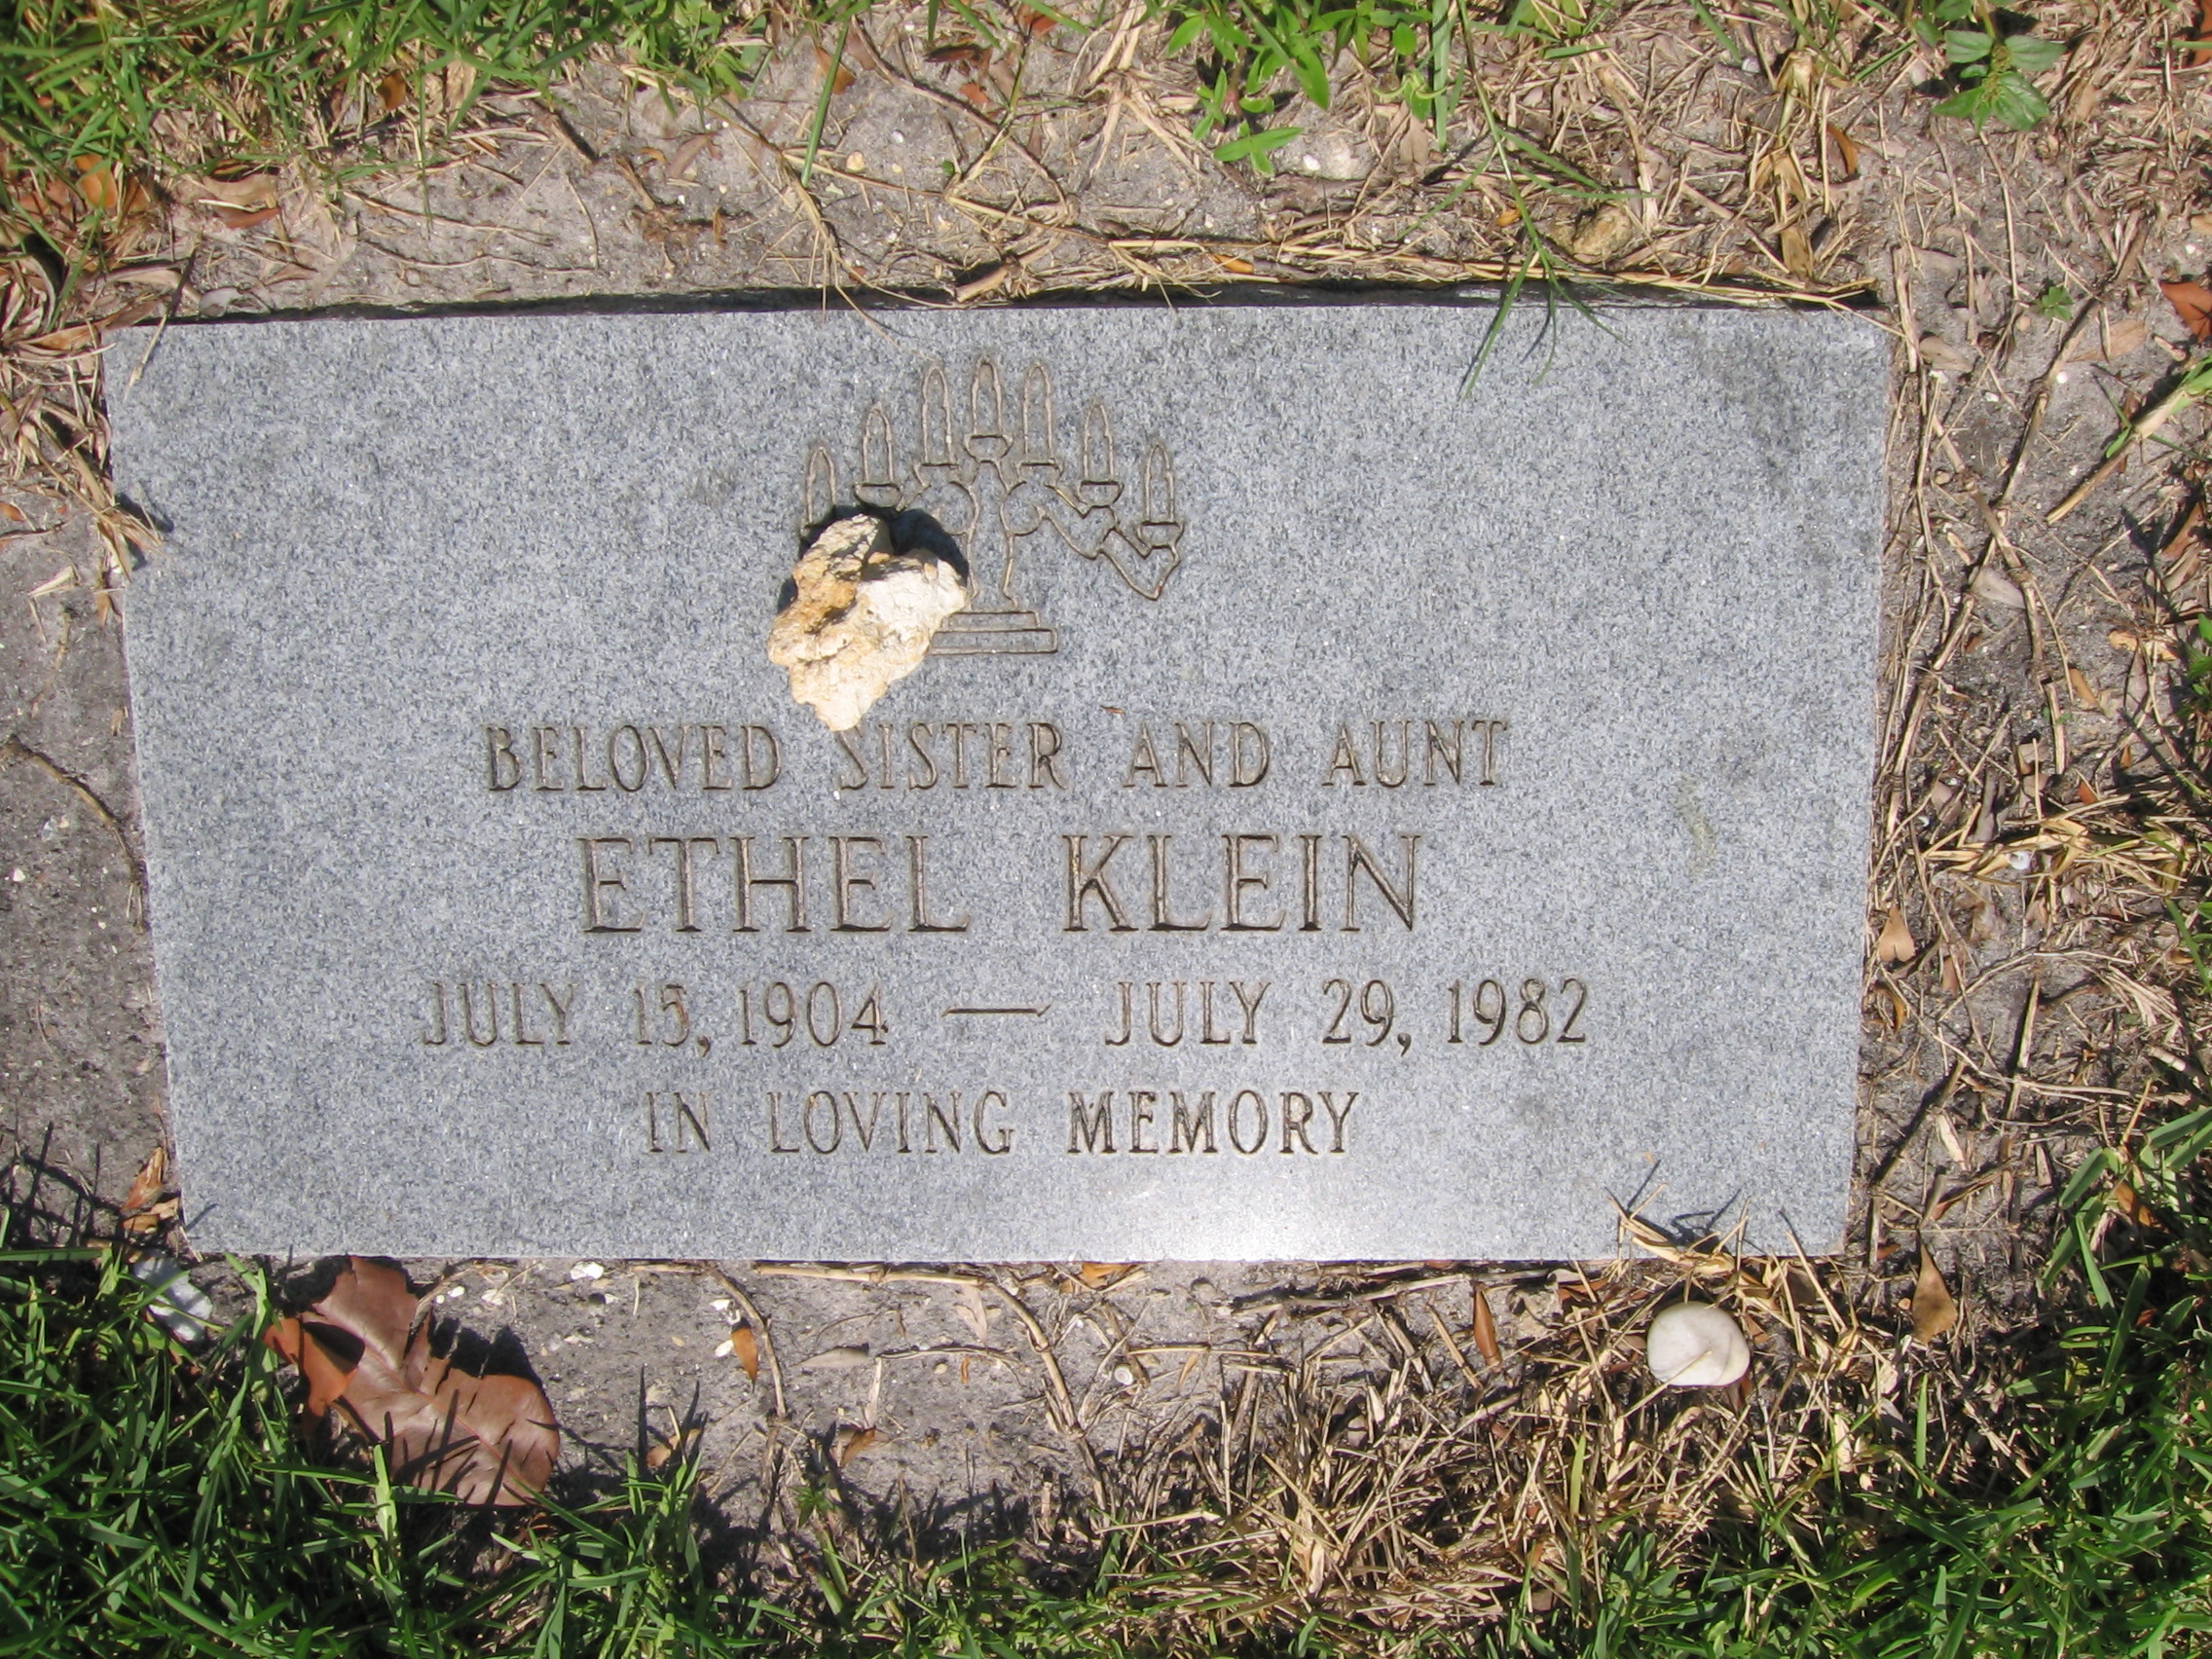 Ethel Klein